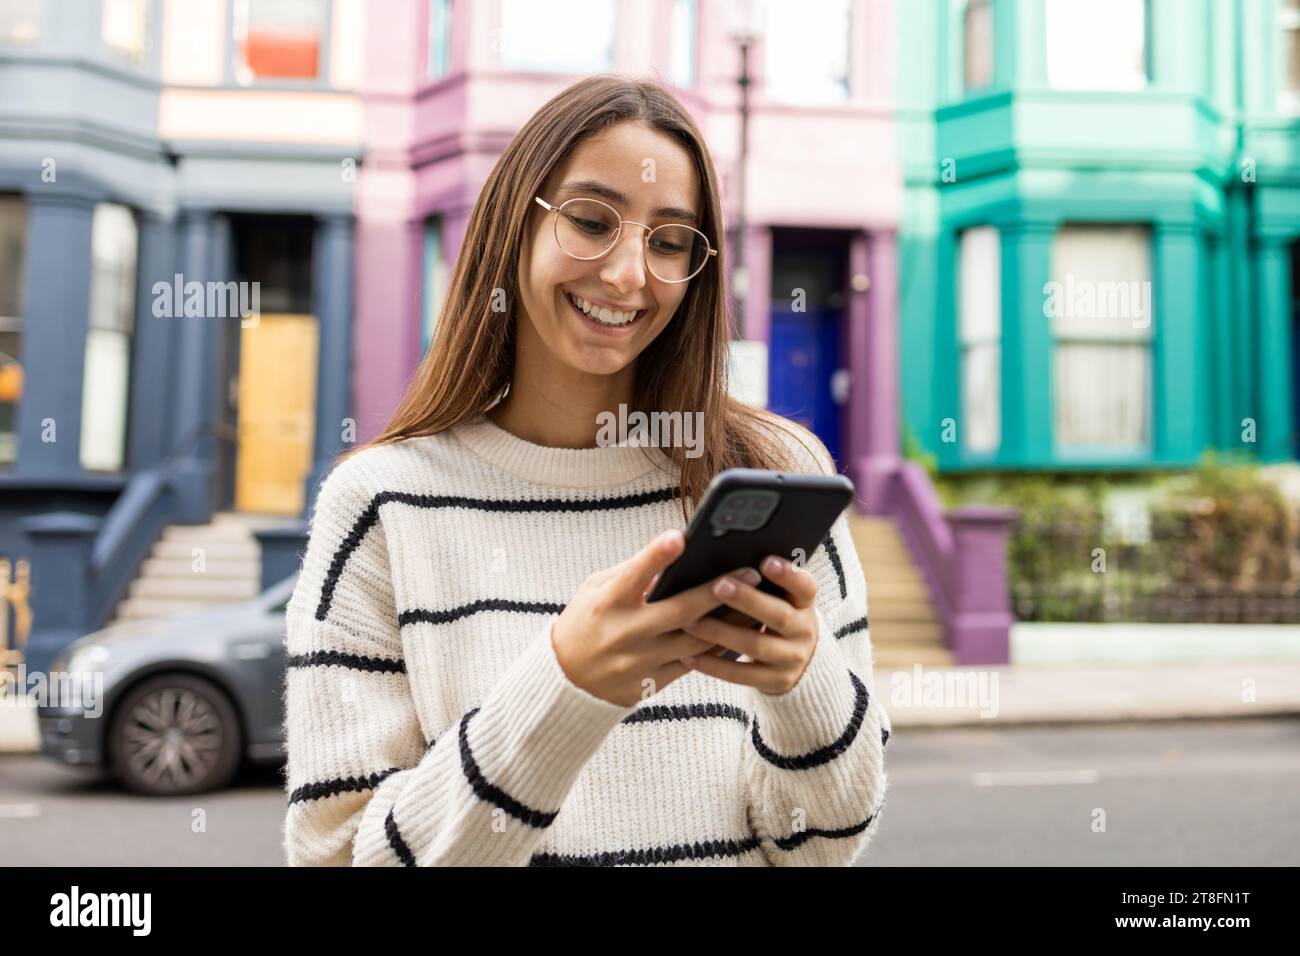 Fröhliche junge Frau in lässiger Kleidung genießt ihr Smartphone vor einer lebendigen, farbigen Kulisse in London. Stockfoto